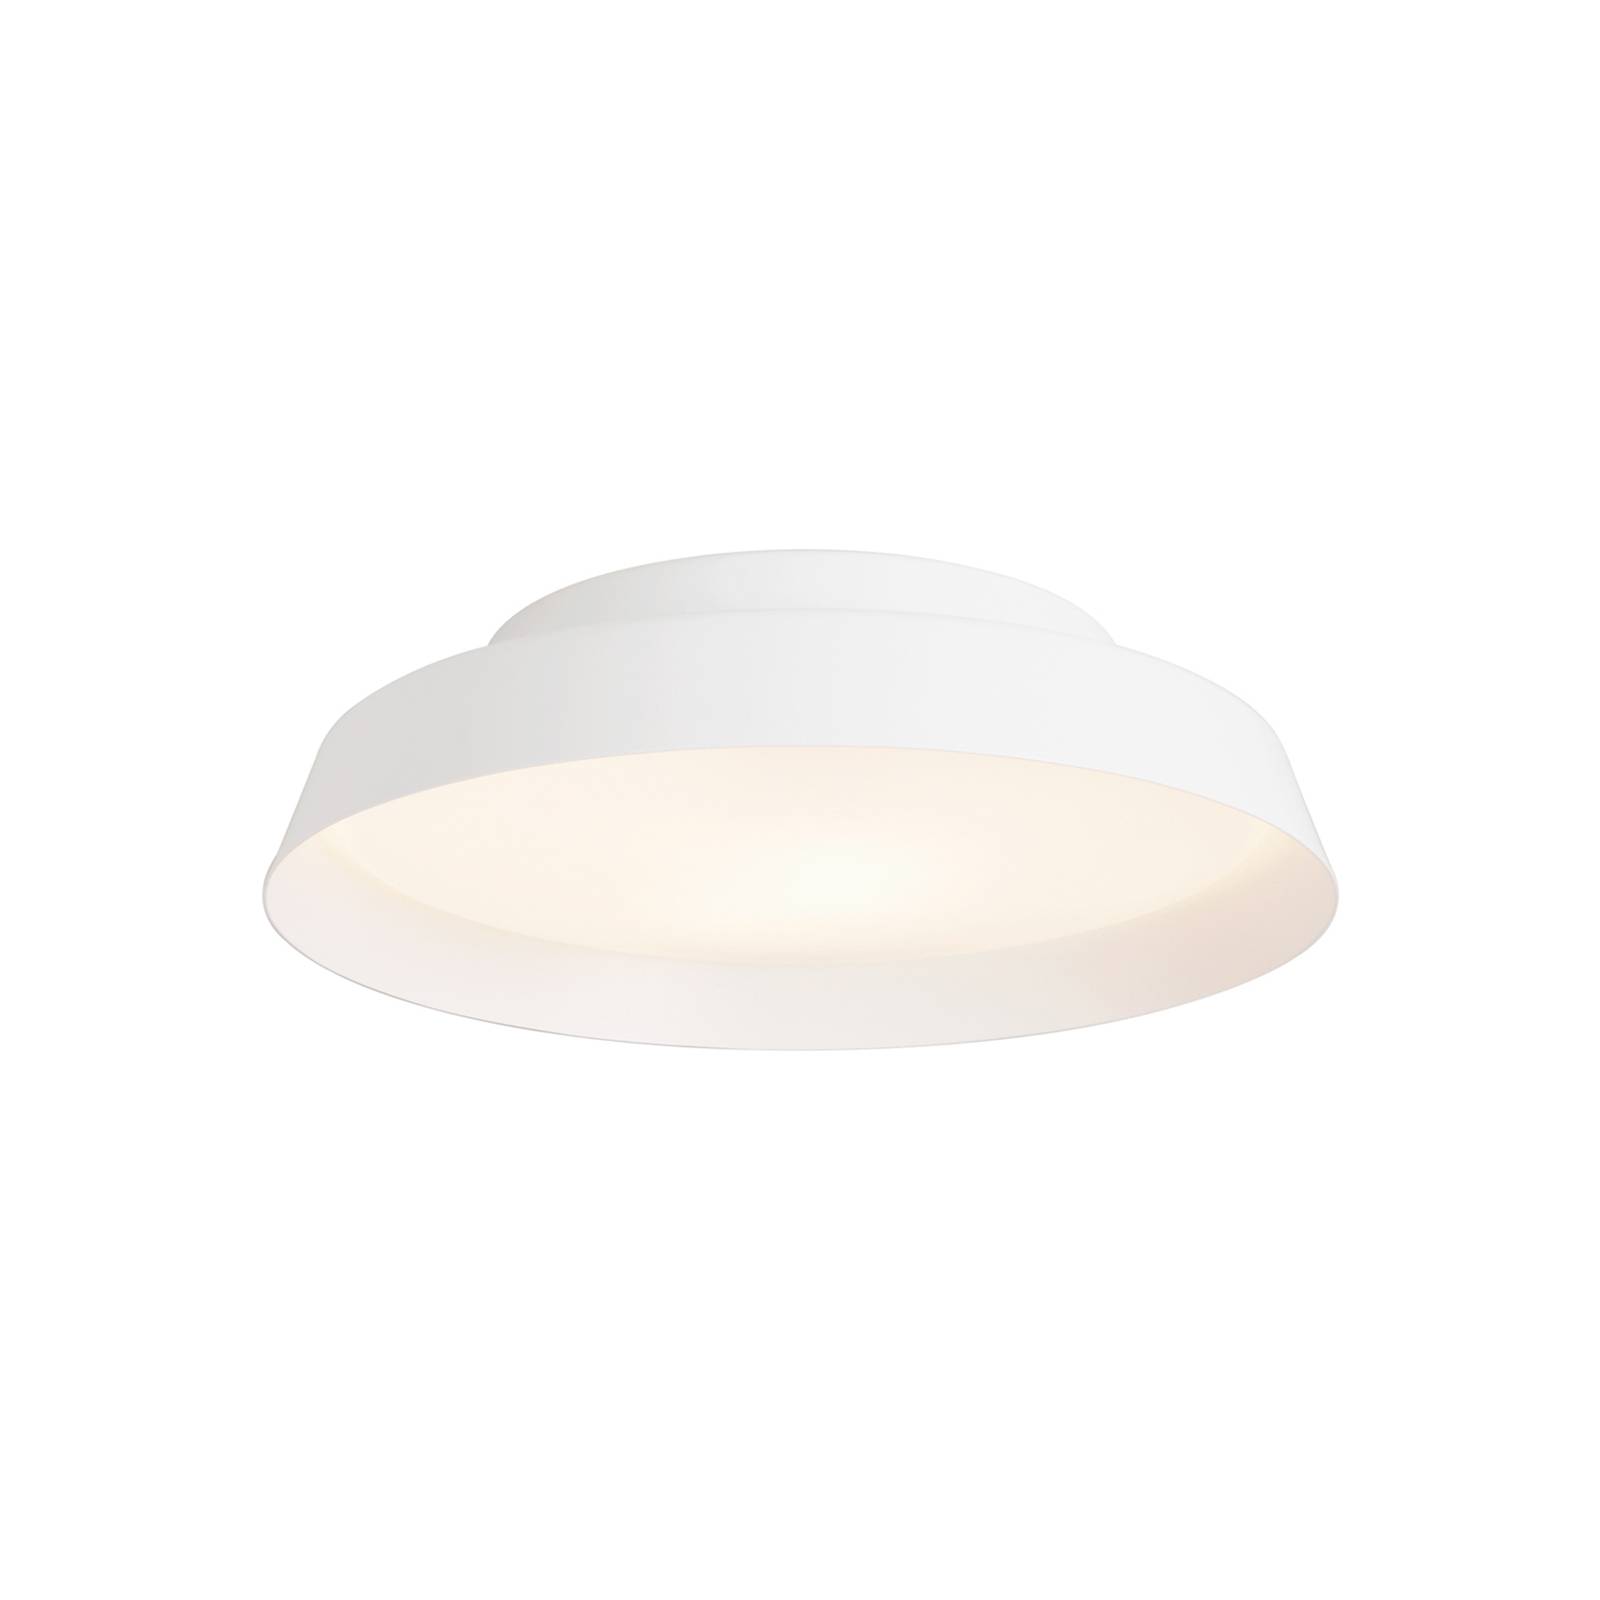 LED mennyezeti világítás Boop! Ø 37 cm fehér/fehér